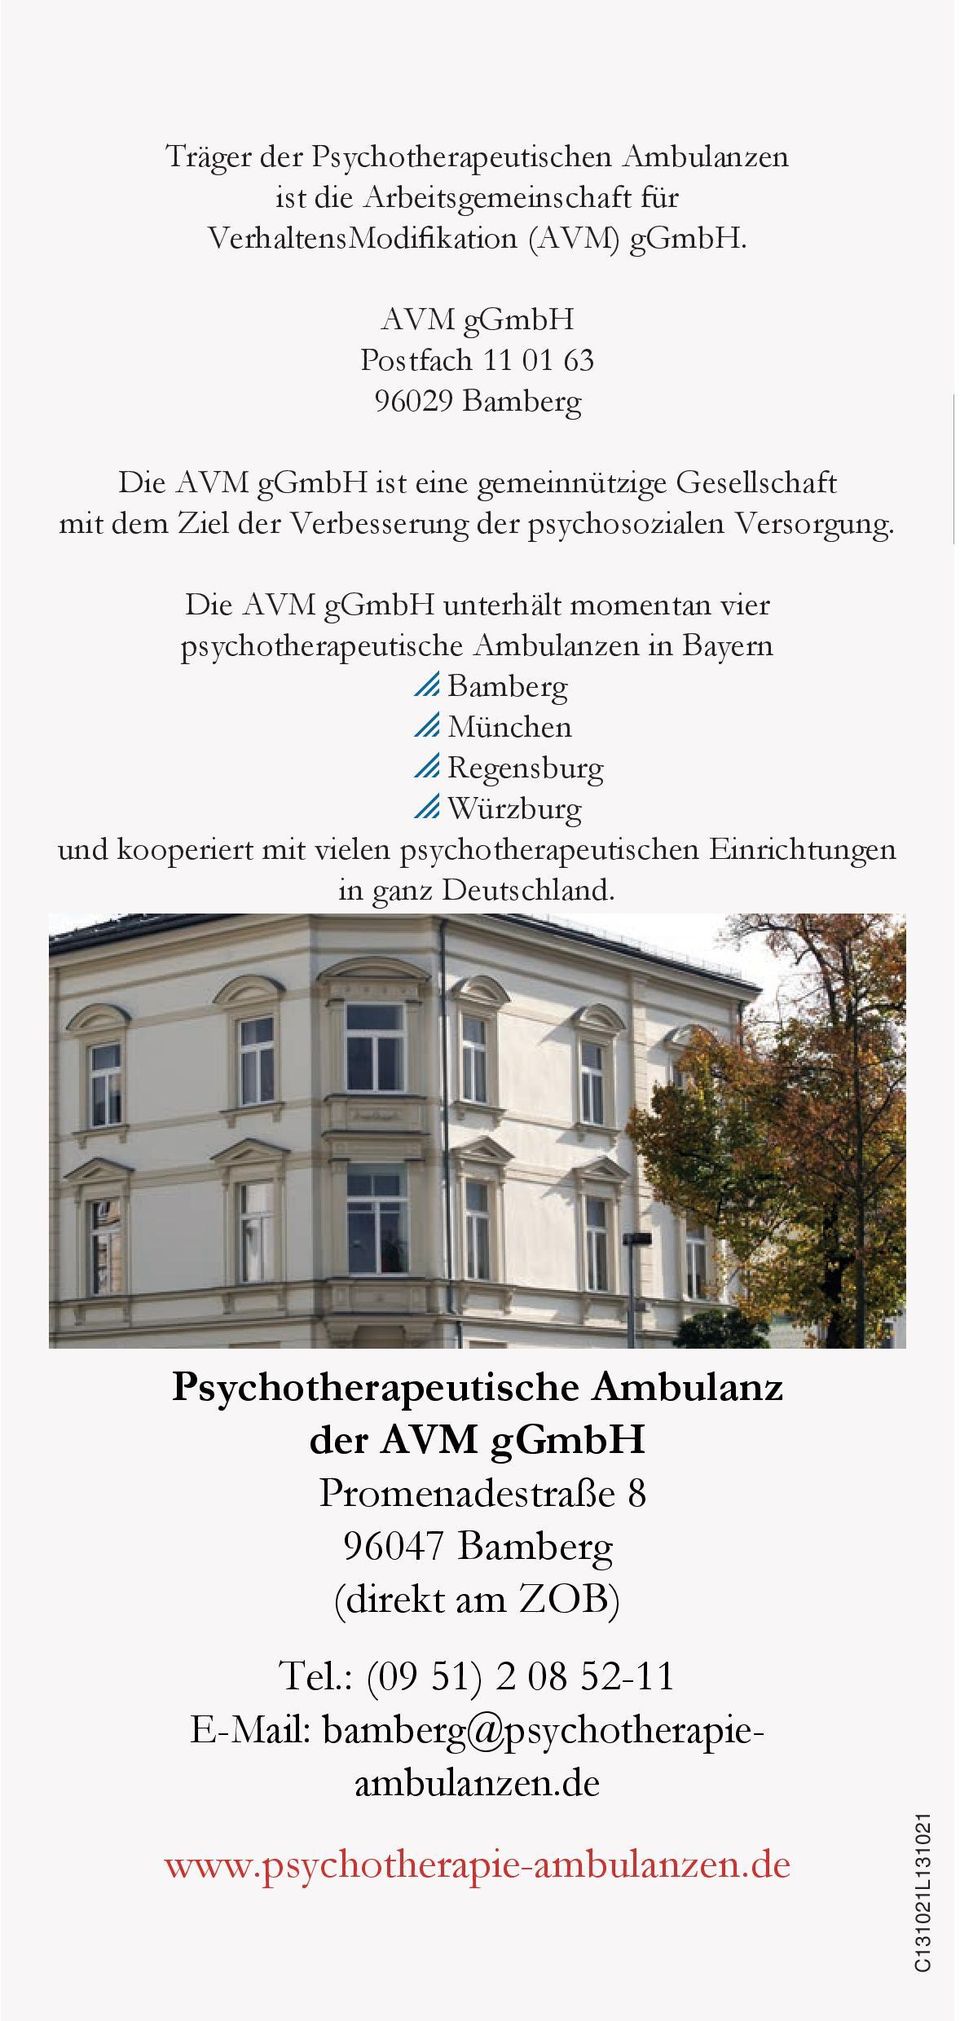 Die AVM ggmbh unterhält momentan vier psychotherapeutische Ambulanzen in Bayern p Bamberg p München p Regensburg p Würzburg und kooperiert mit vielen